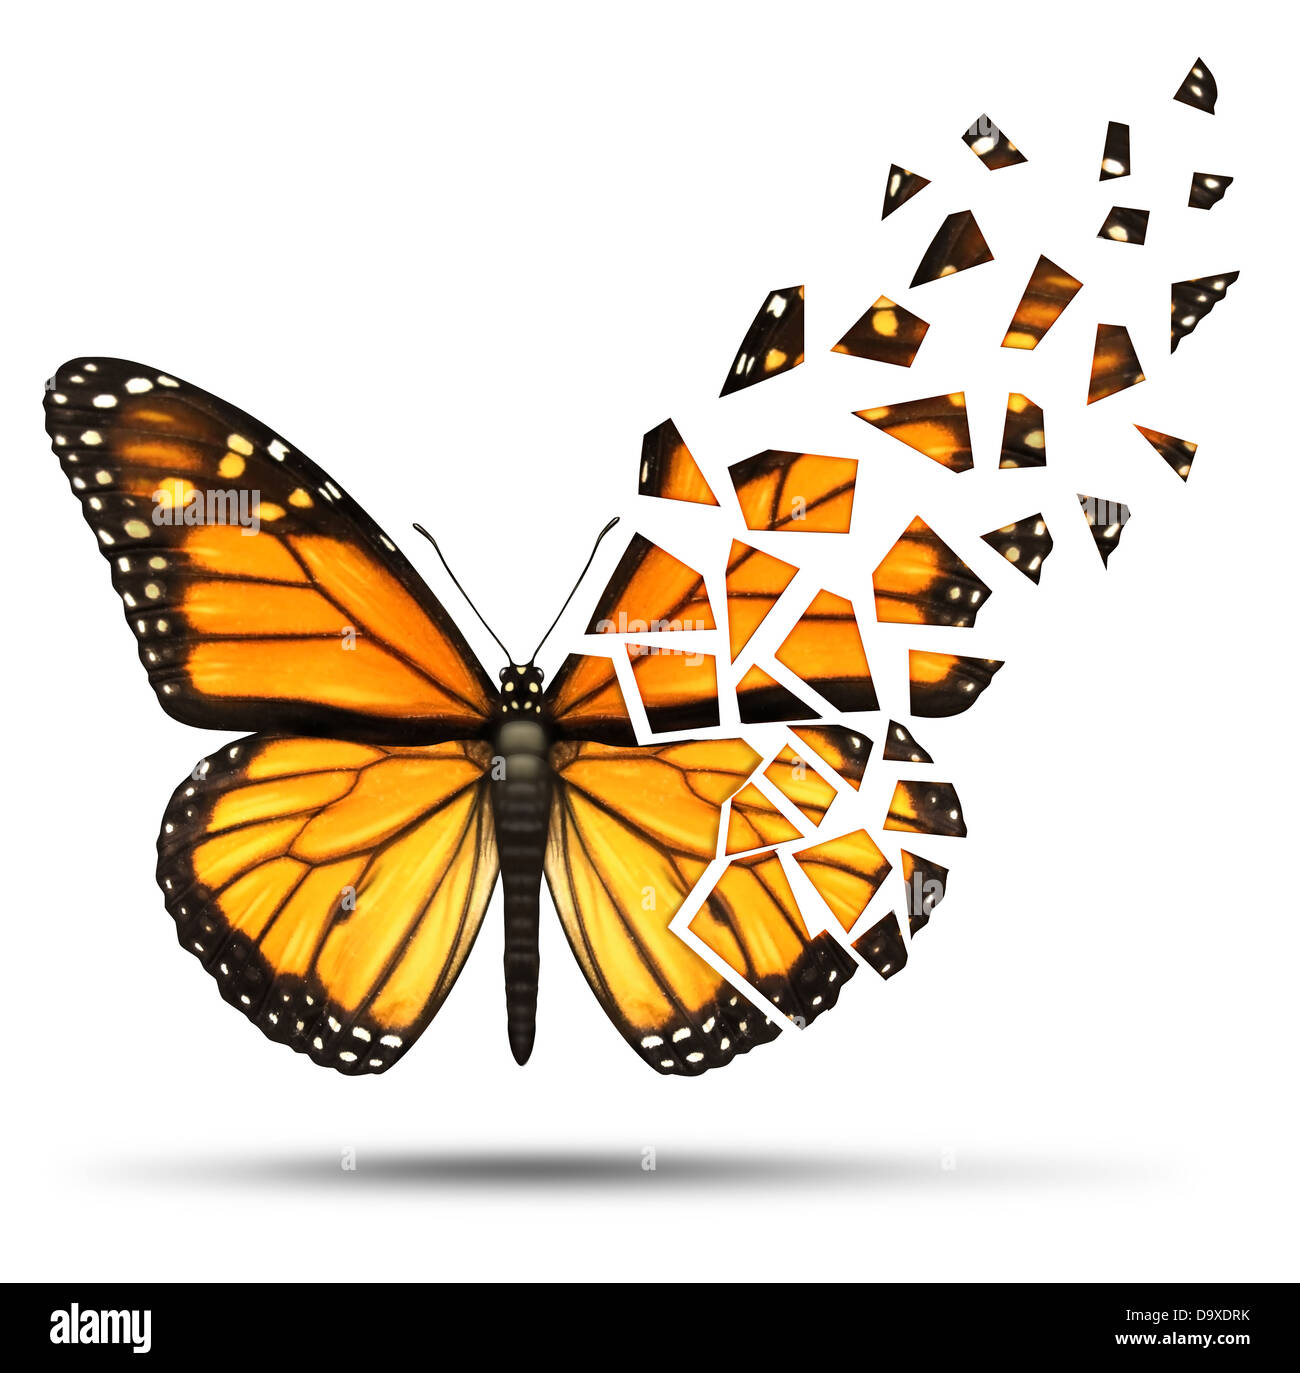 Verlust der Mobilität und degenerativen Verlust Gesundheitskonzept und Freiheit von Mobiliy wegen Verletzung Ormedical Krankheit vertreten durch ein Monarch-Schmetterling mit gebrochenen und Fading Flügeln auf einem weißen Hintergrund zu verlieren. Stockfoto